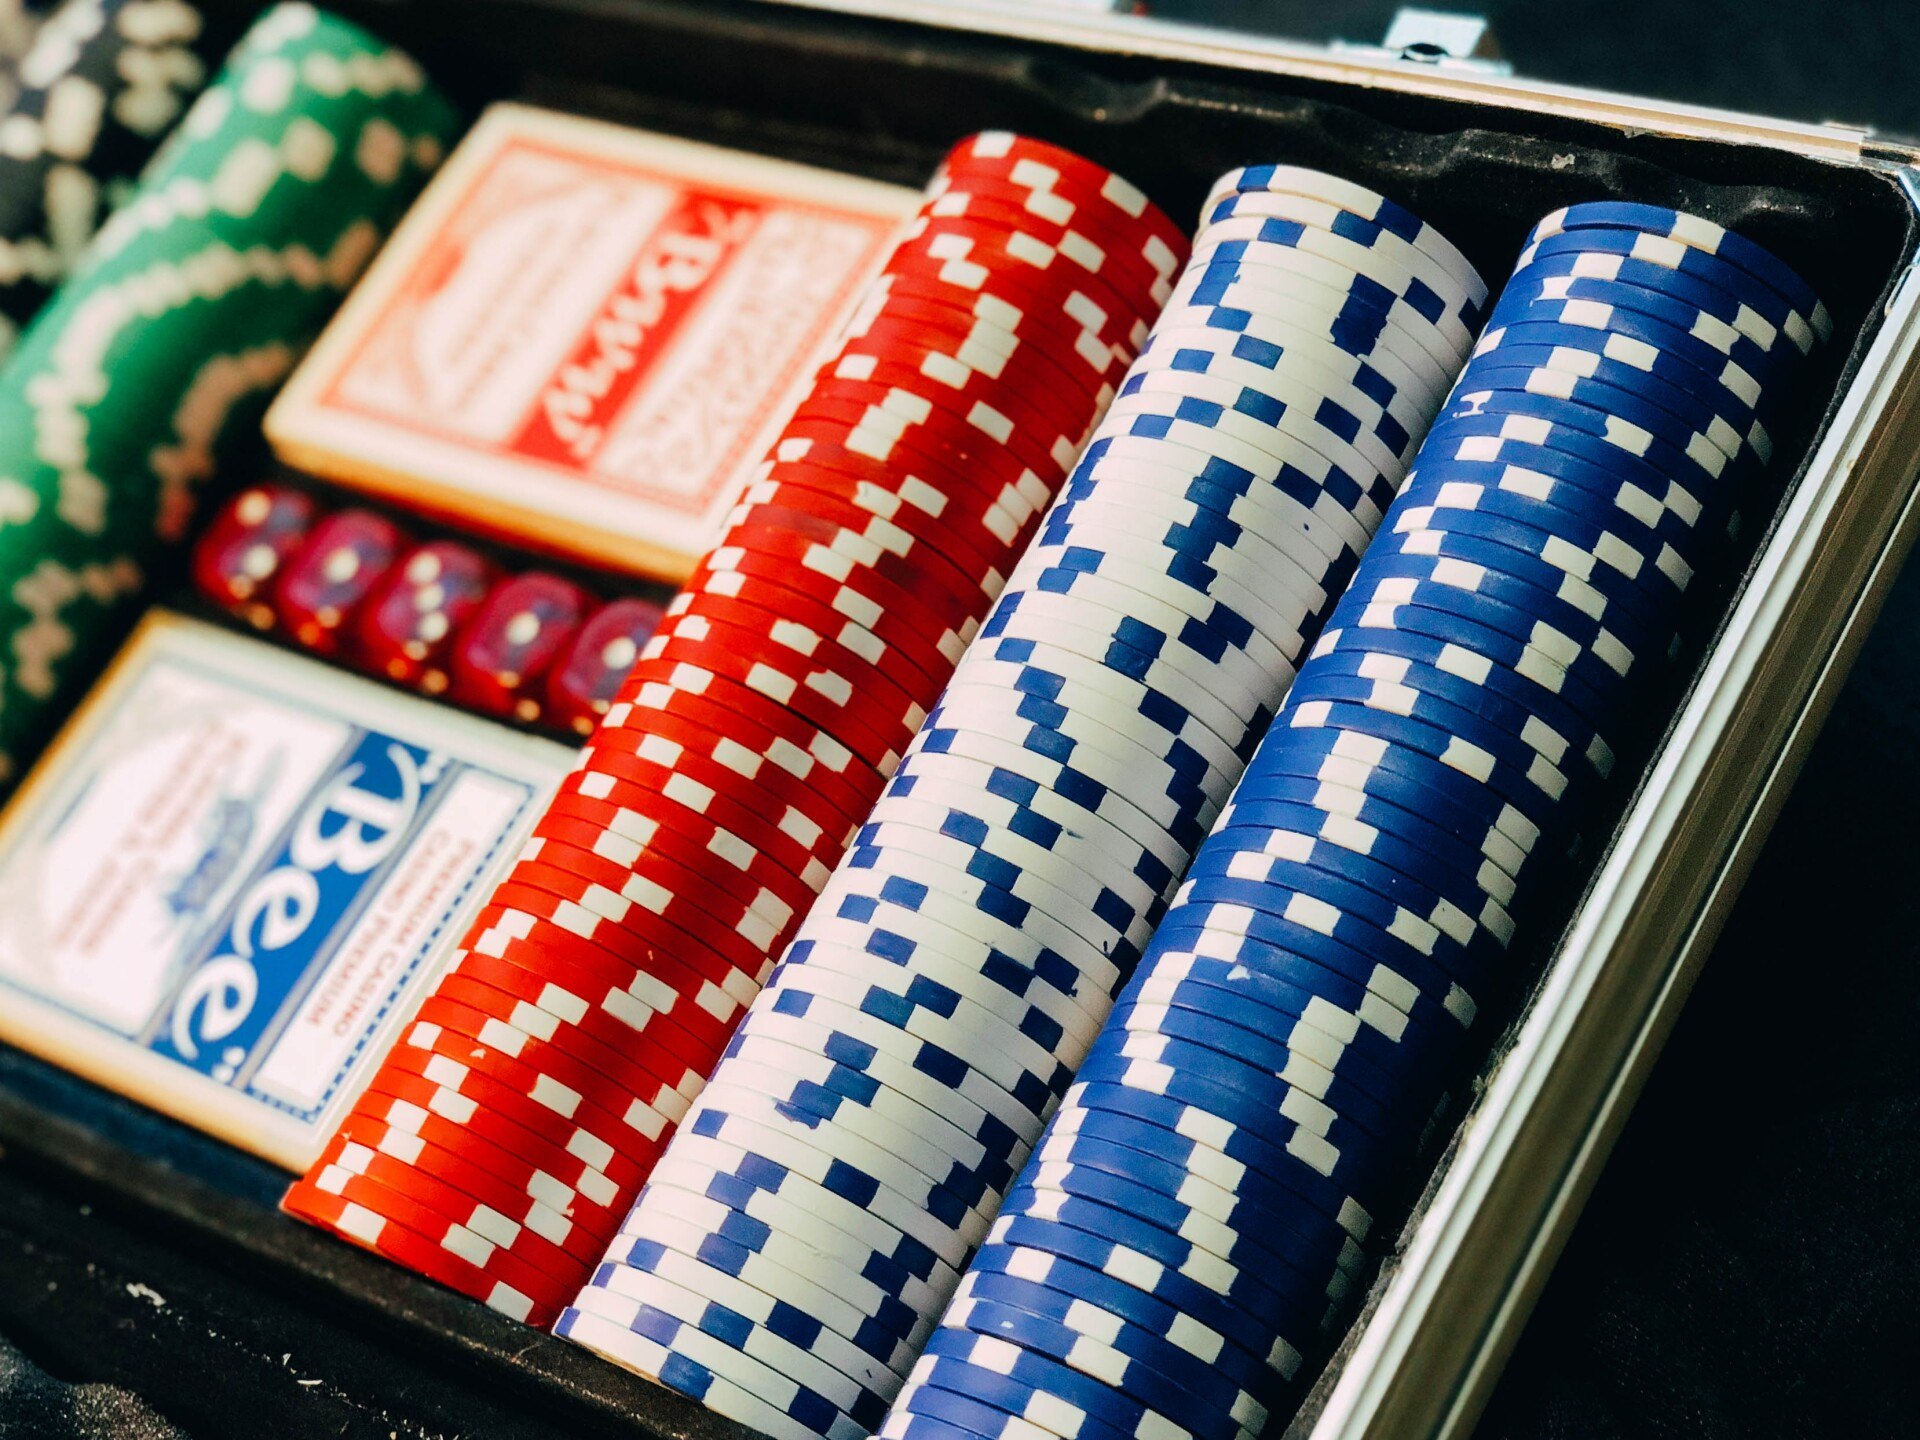 ¿Qué puede hacer con la mejores casinos online ahora mismo?